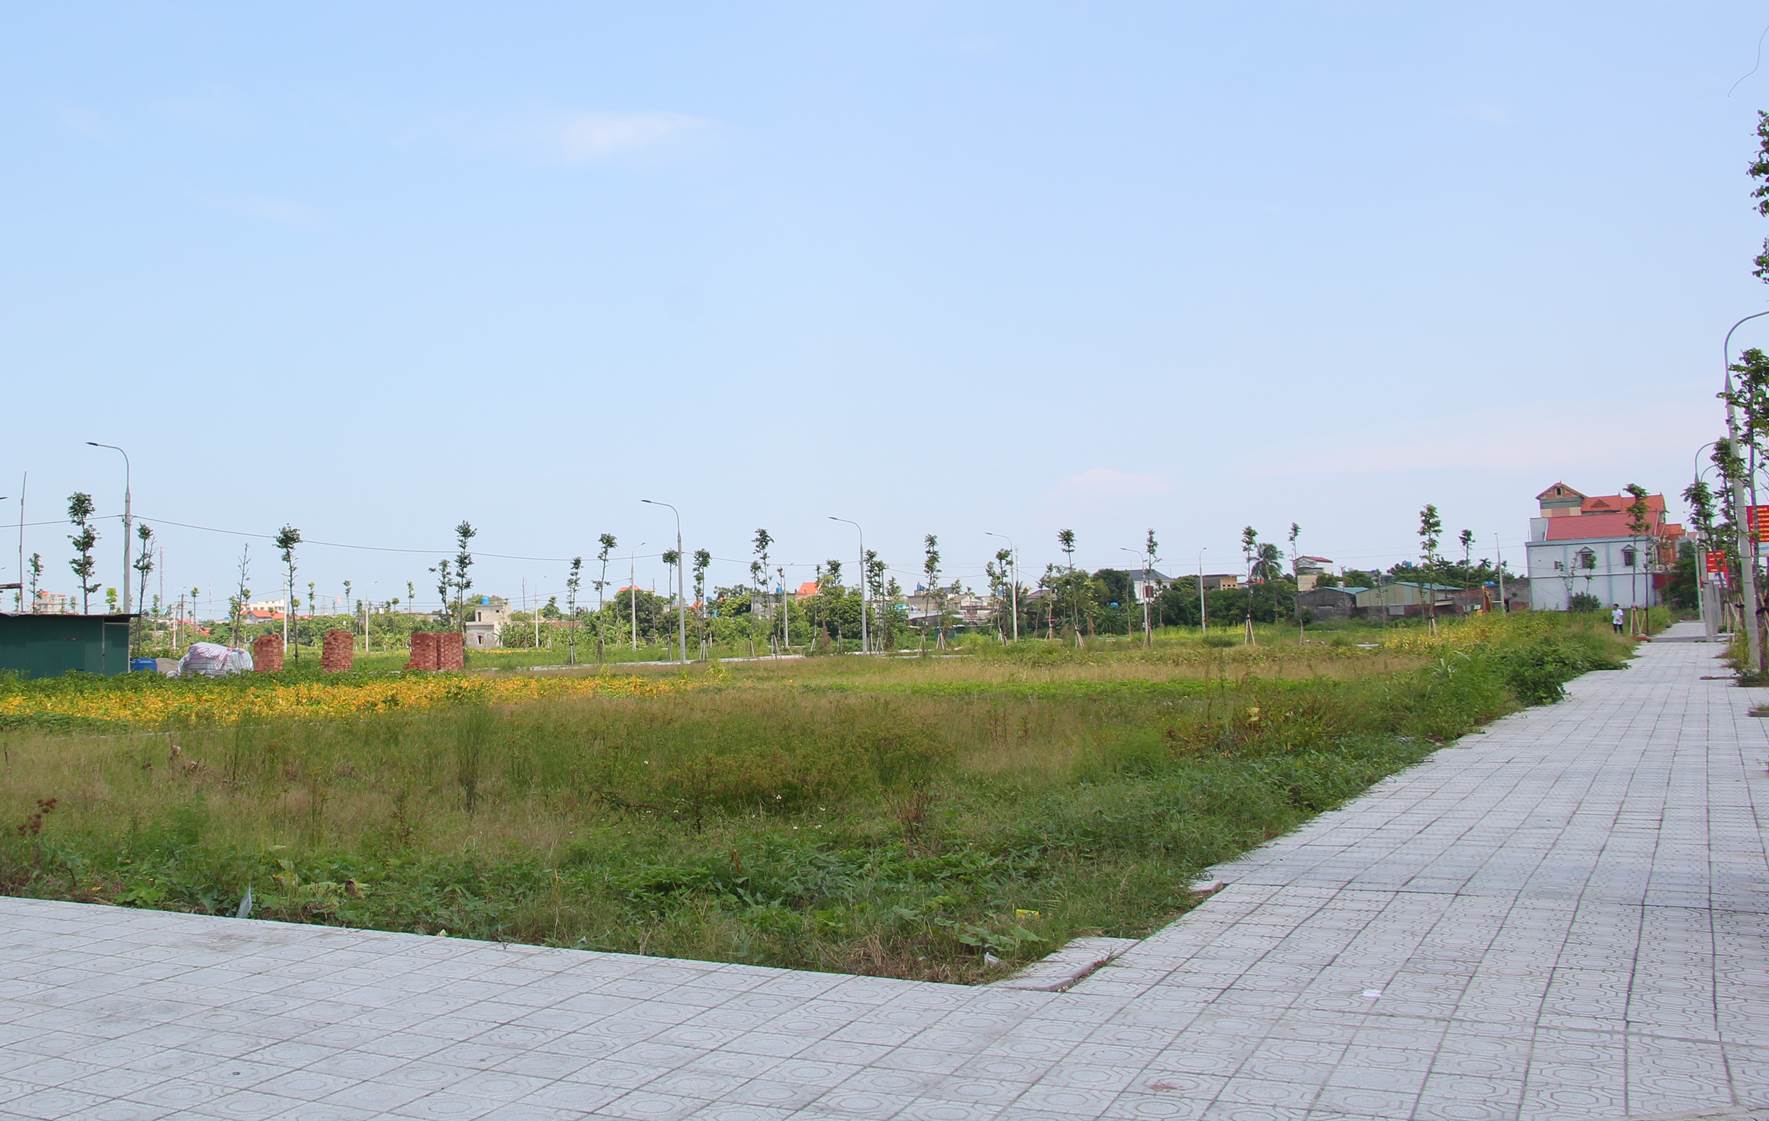 Các tỉnh thành ven Hà Nội chuẩn bị đấu giá gần 200 lô đất, giá khởi điểm chỉ từ 2 triệu đồng/m2 - Ảnh 2.